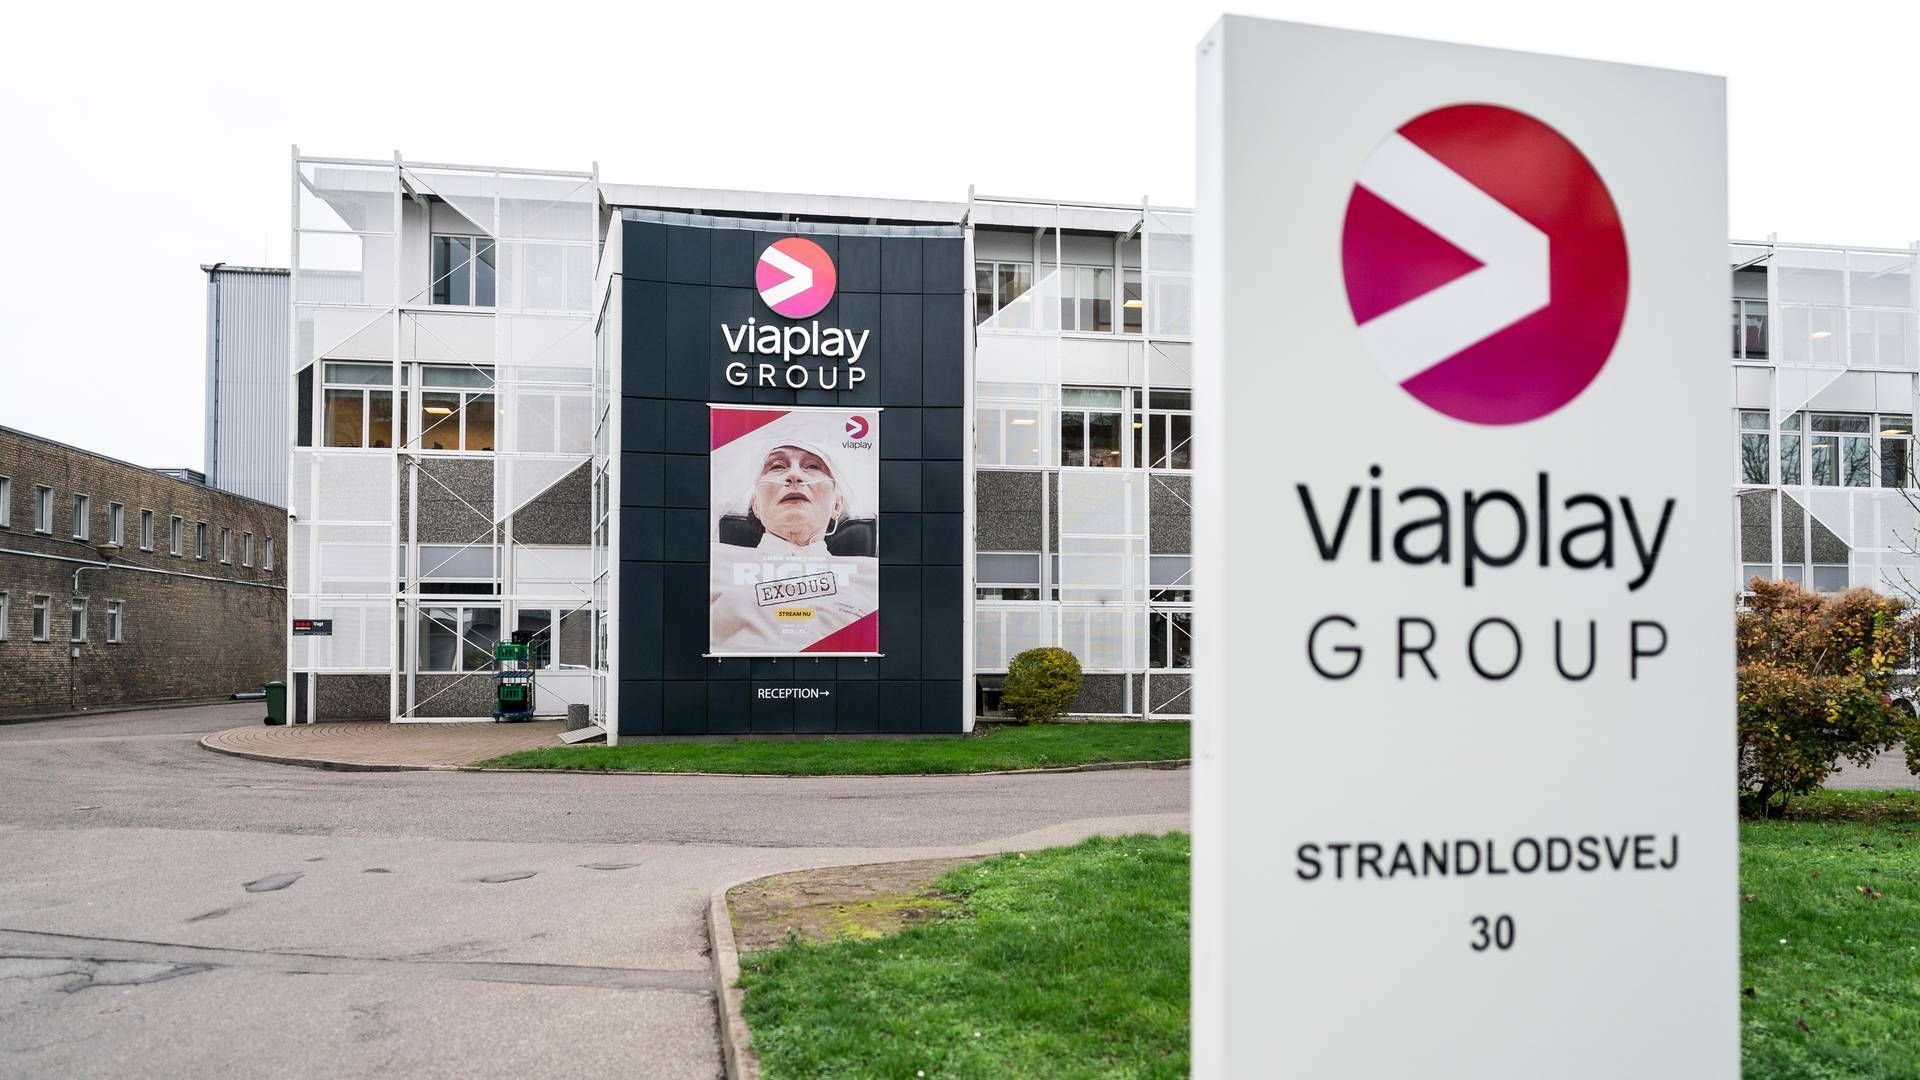 Viaplay Group er i store økonomiske vanskeligheder og selskabets ledelse har foreslået en omfattende redningsplan for at undgå en potentiel konkurs. | Foto: Rasmus Flindt Pedersen